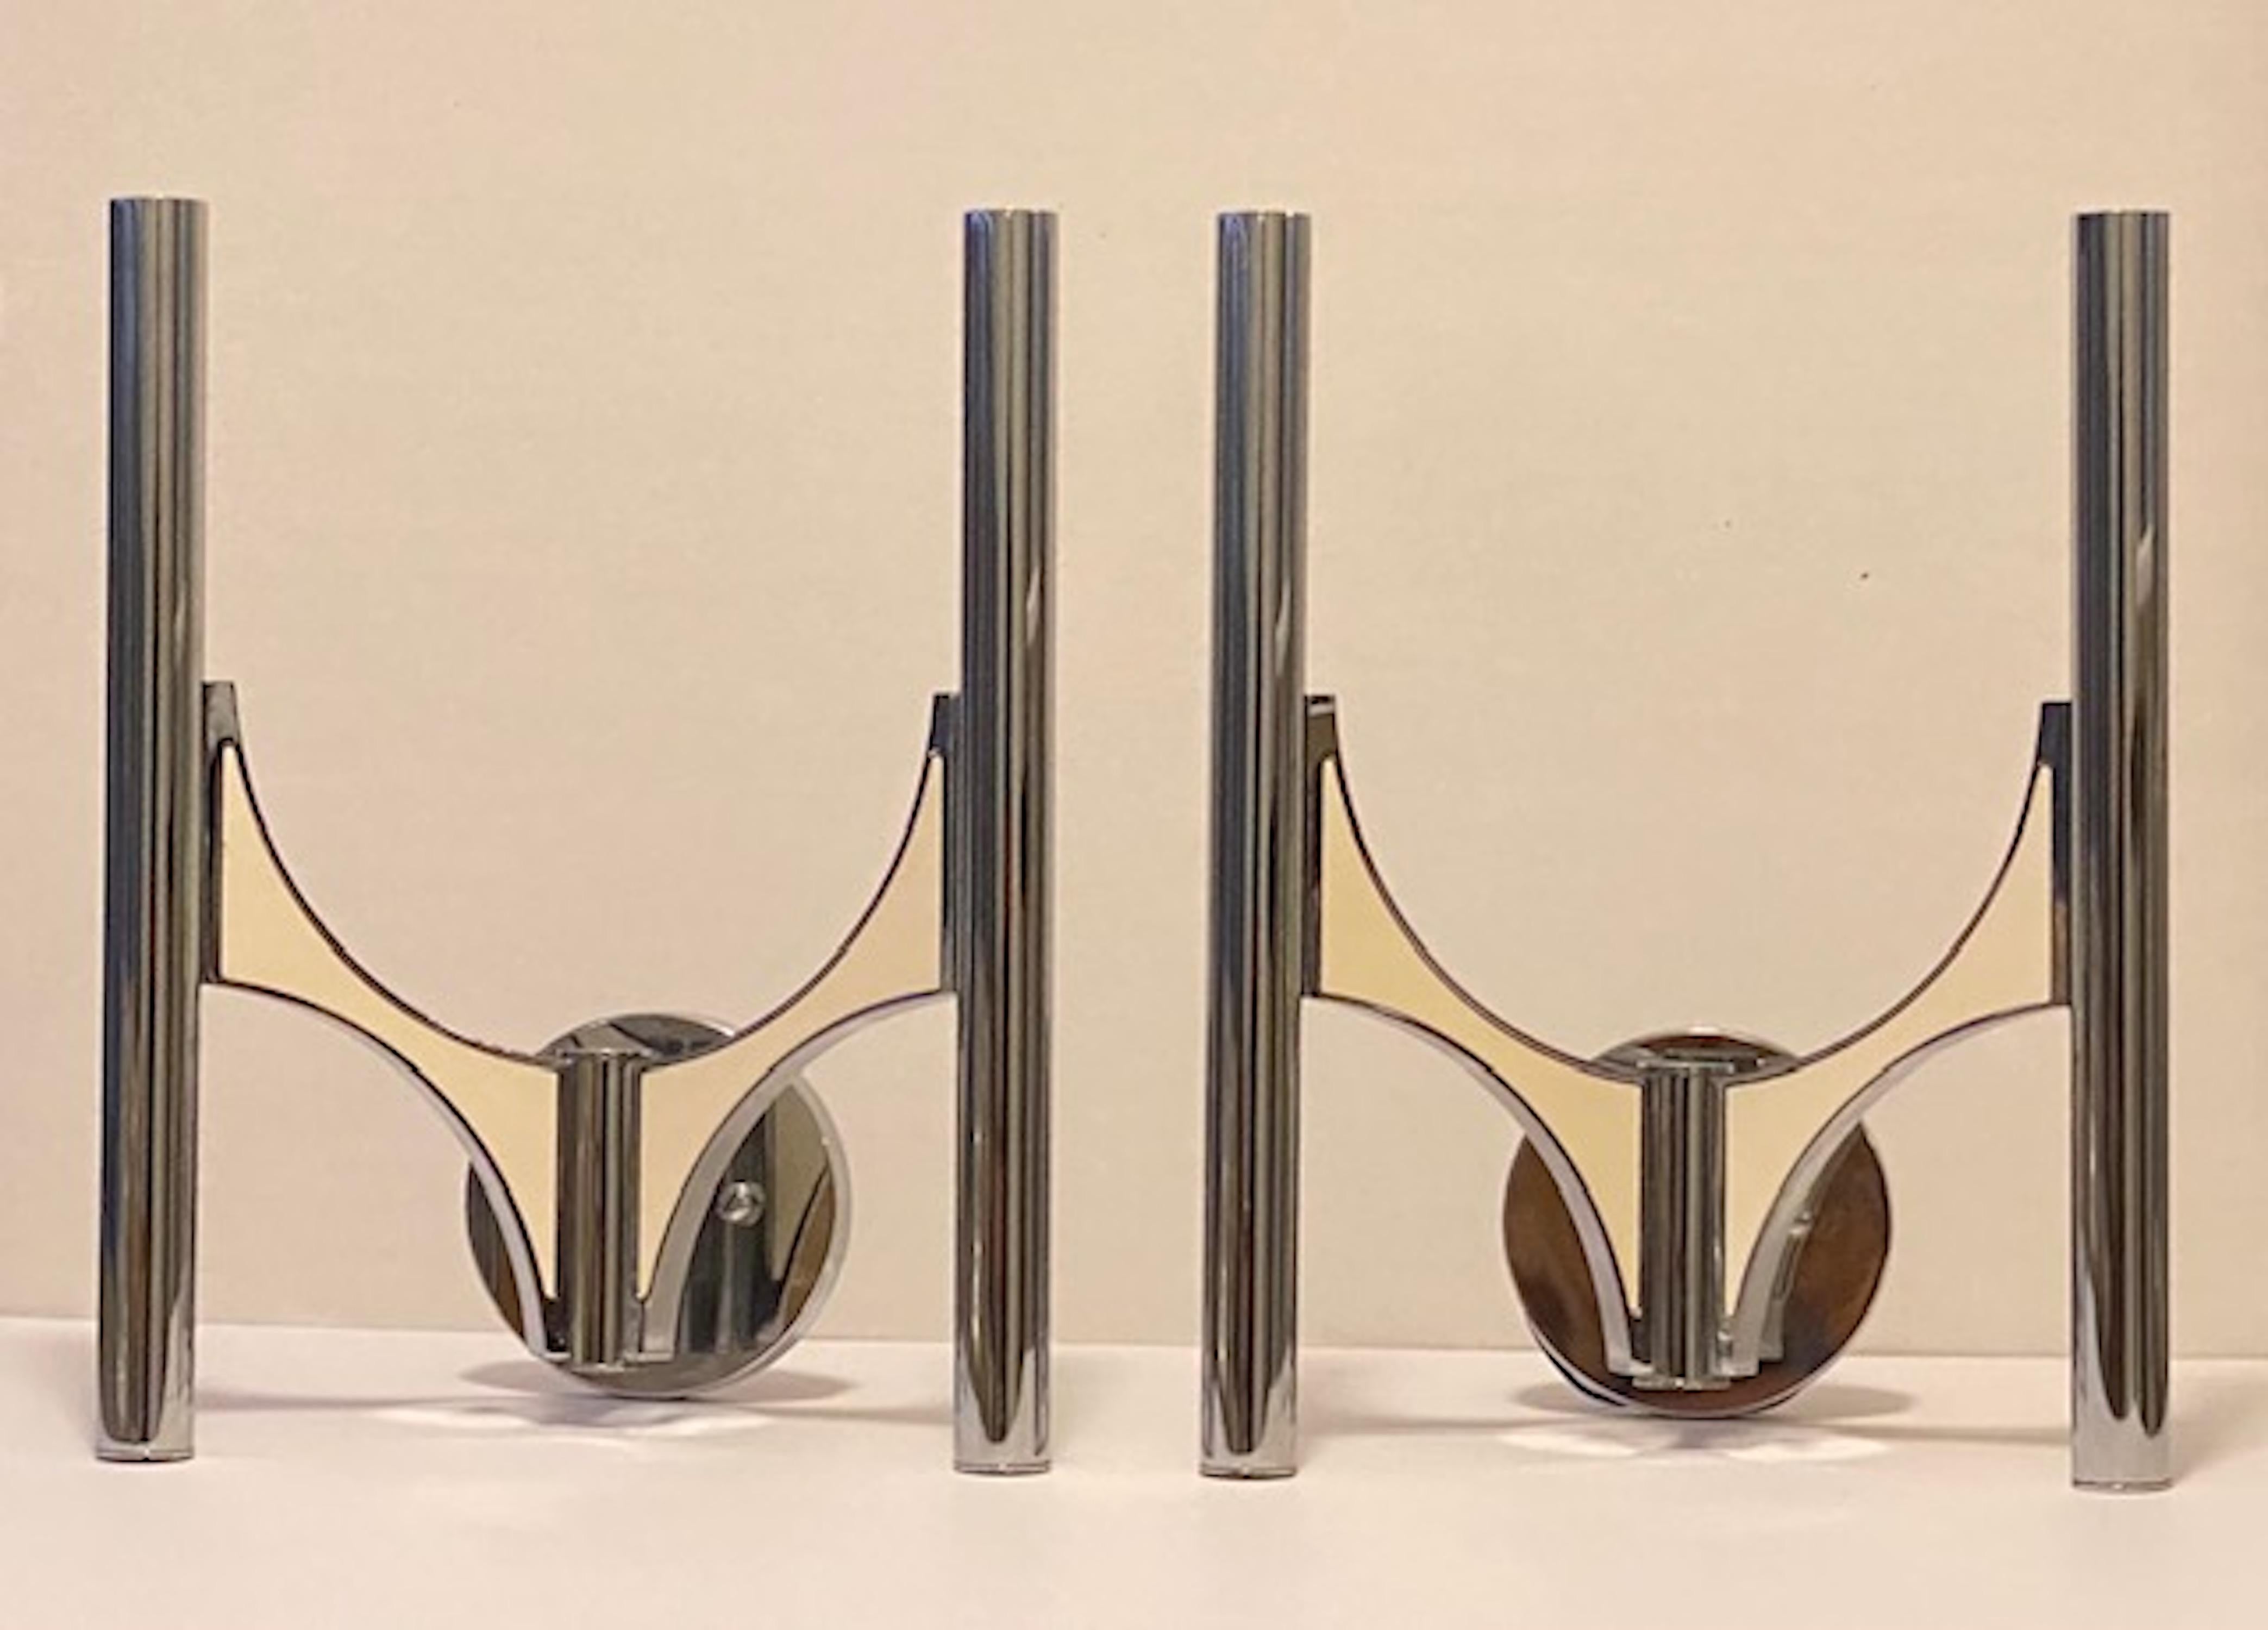 Interessantes Paar zweiarmiger Wandleuchter von Gaetano Sciolari  jedes Rohr enthält eine  Kandelaberglühbirne und Metallplatten an den Armen. Die emaillierten Metallplatten halten sich gegenseitig mit Magneten.
Der originale Sciolari-Aufkleber ist